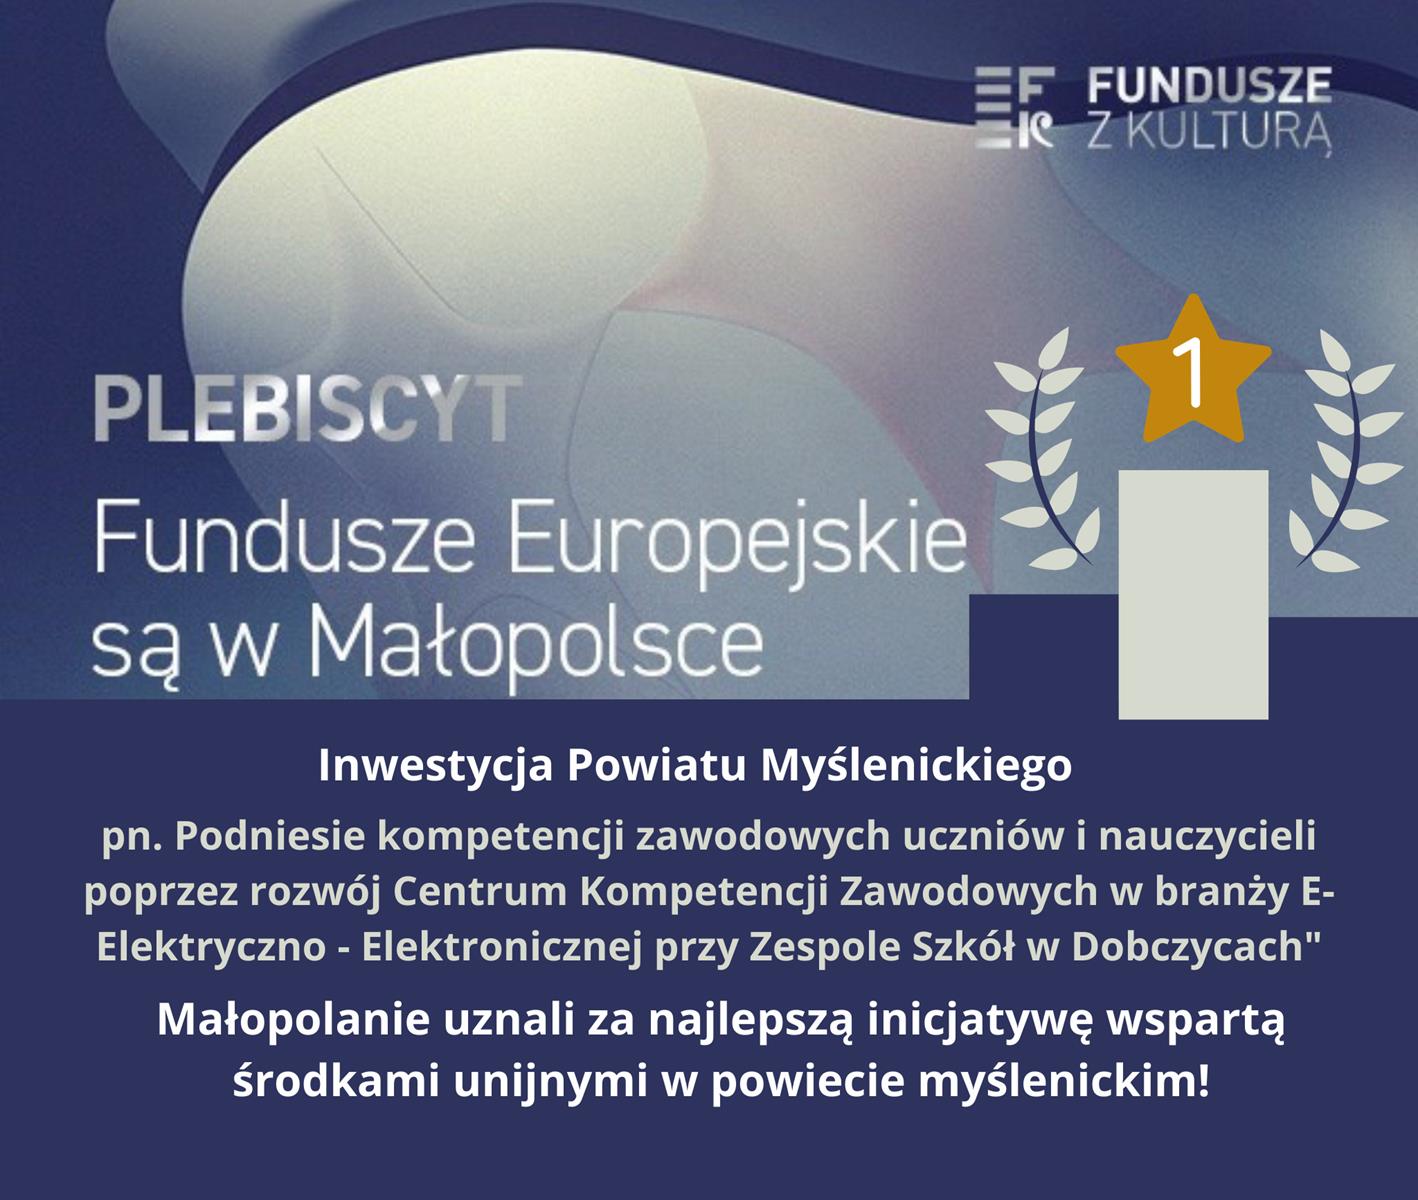 Projekty Powiatu Myślenickiego na podium w plebiscycie „Fundusze Europejskie są w Małopolsce”